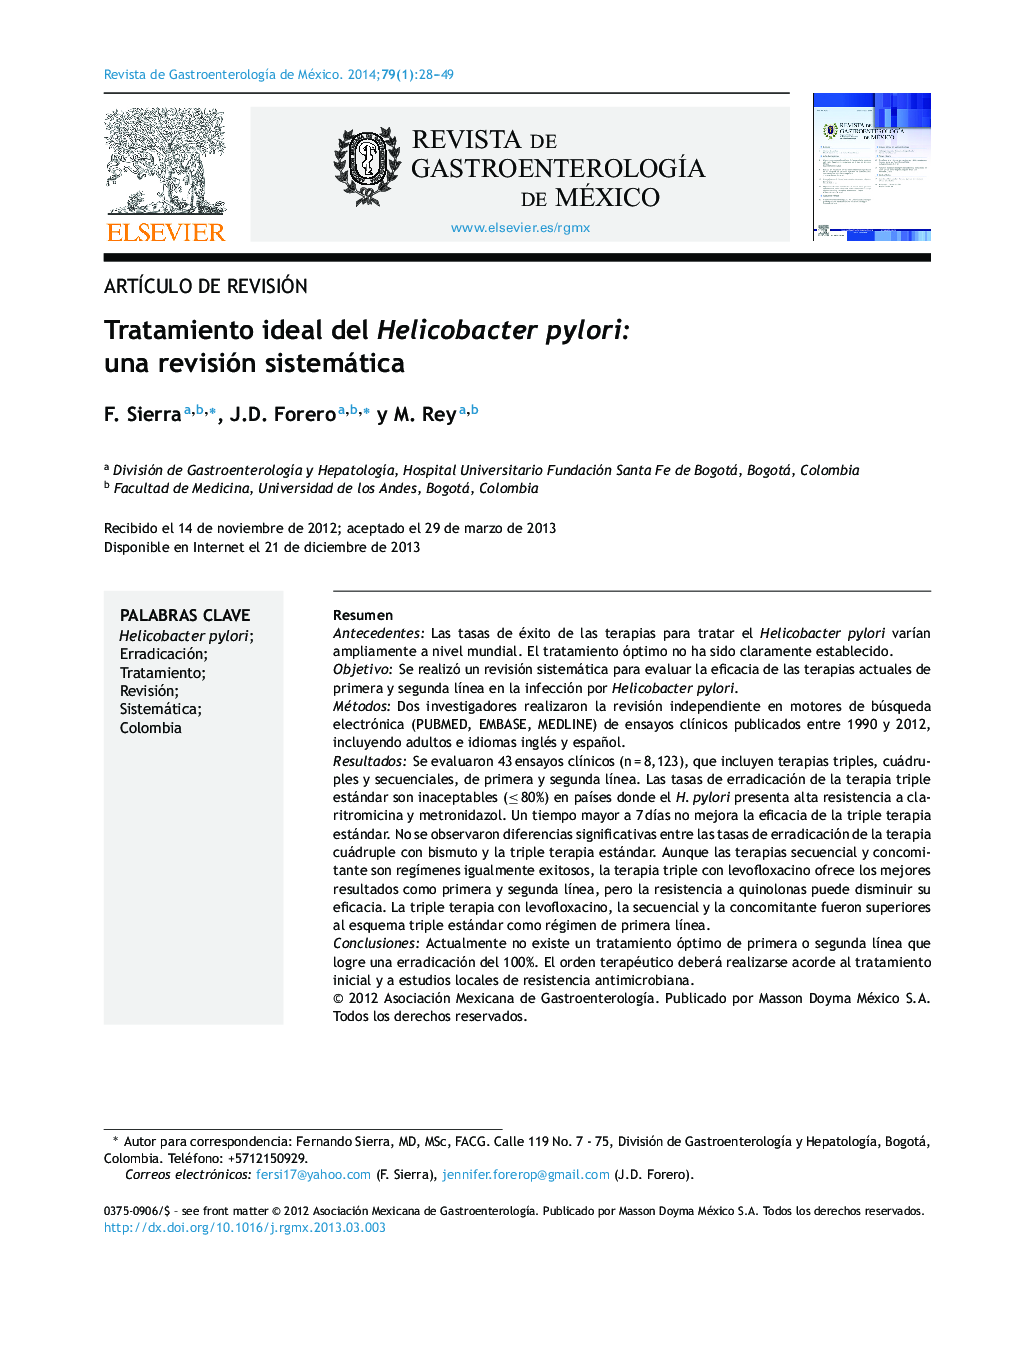 Tratamiento ideal del Helicobacter pylori: una revisión sistemática